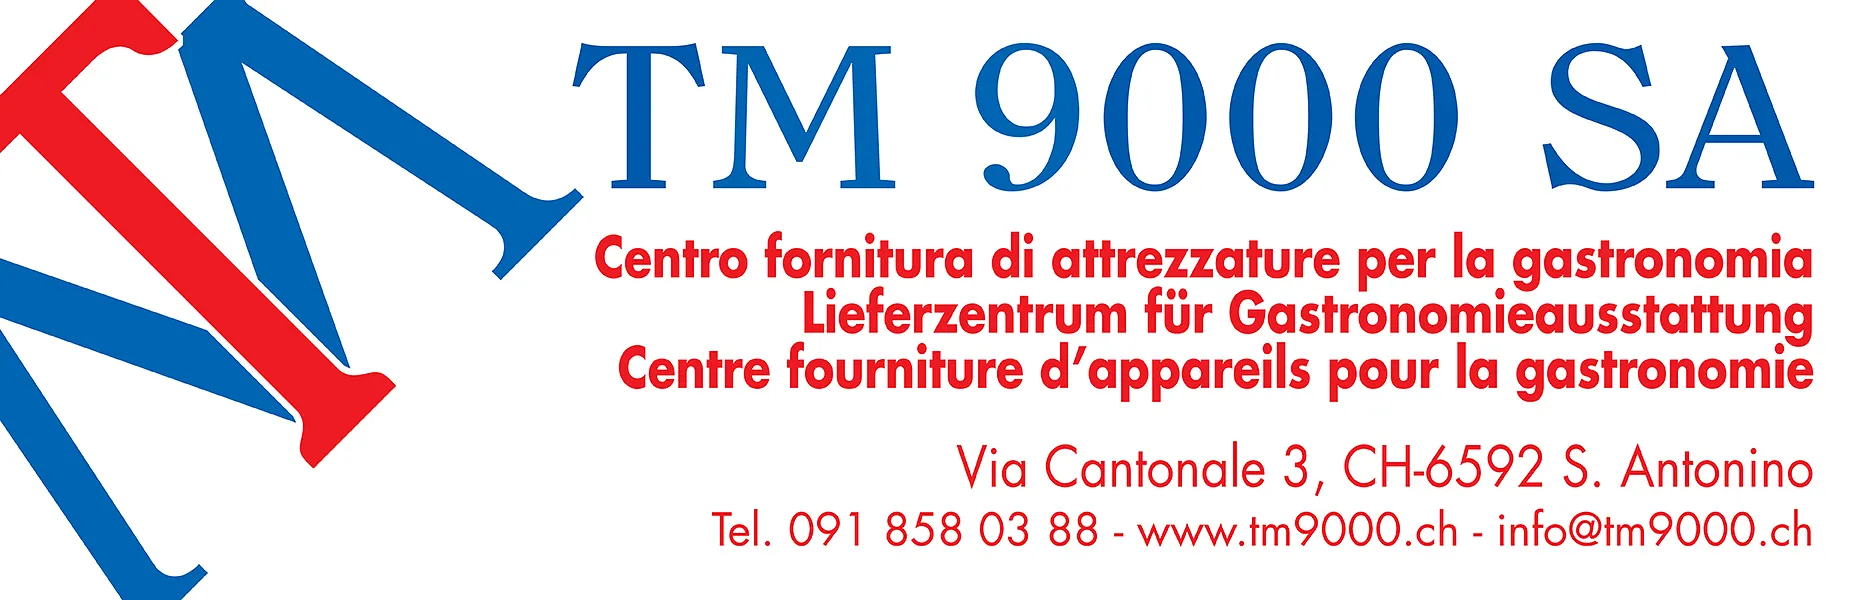 TM 9000 SA